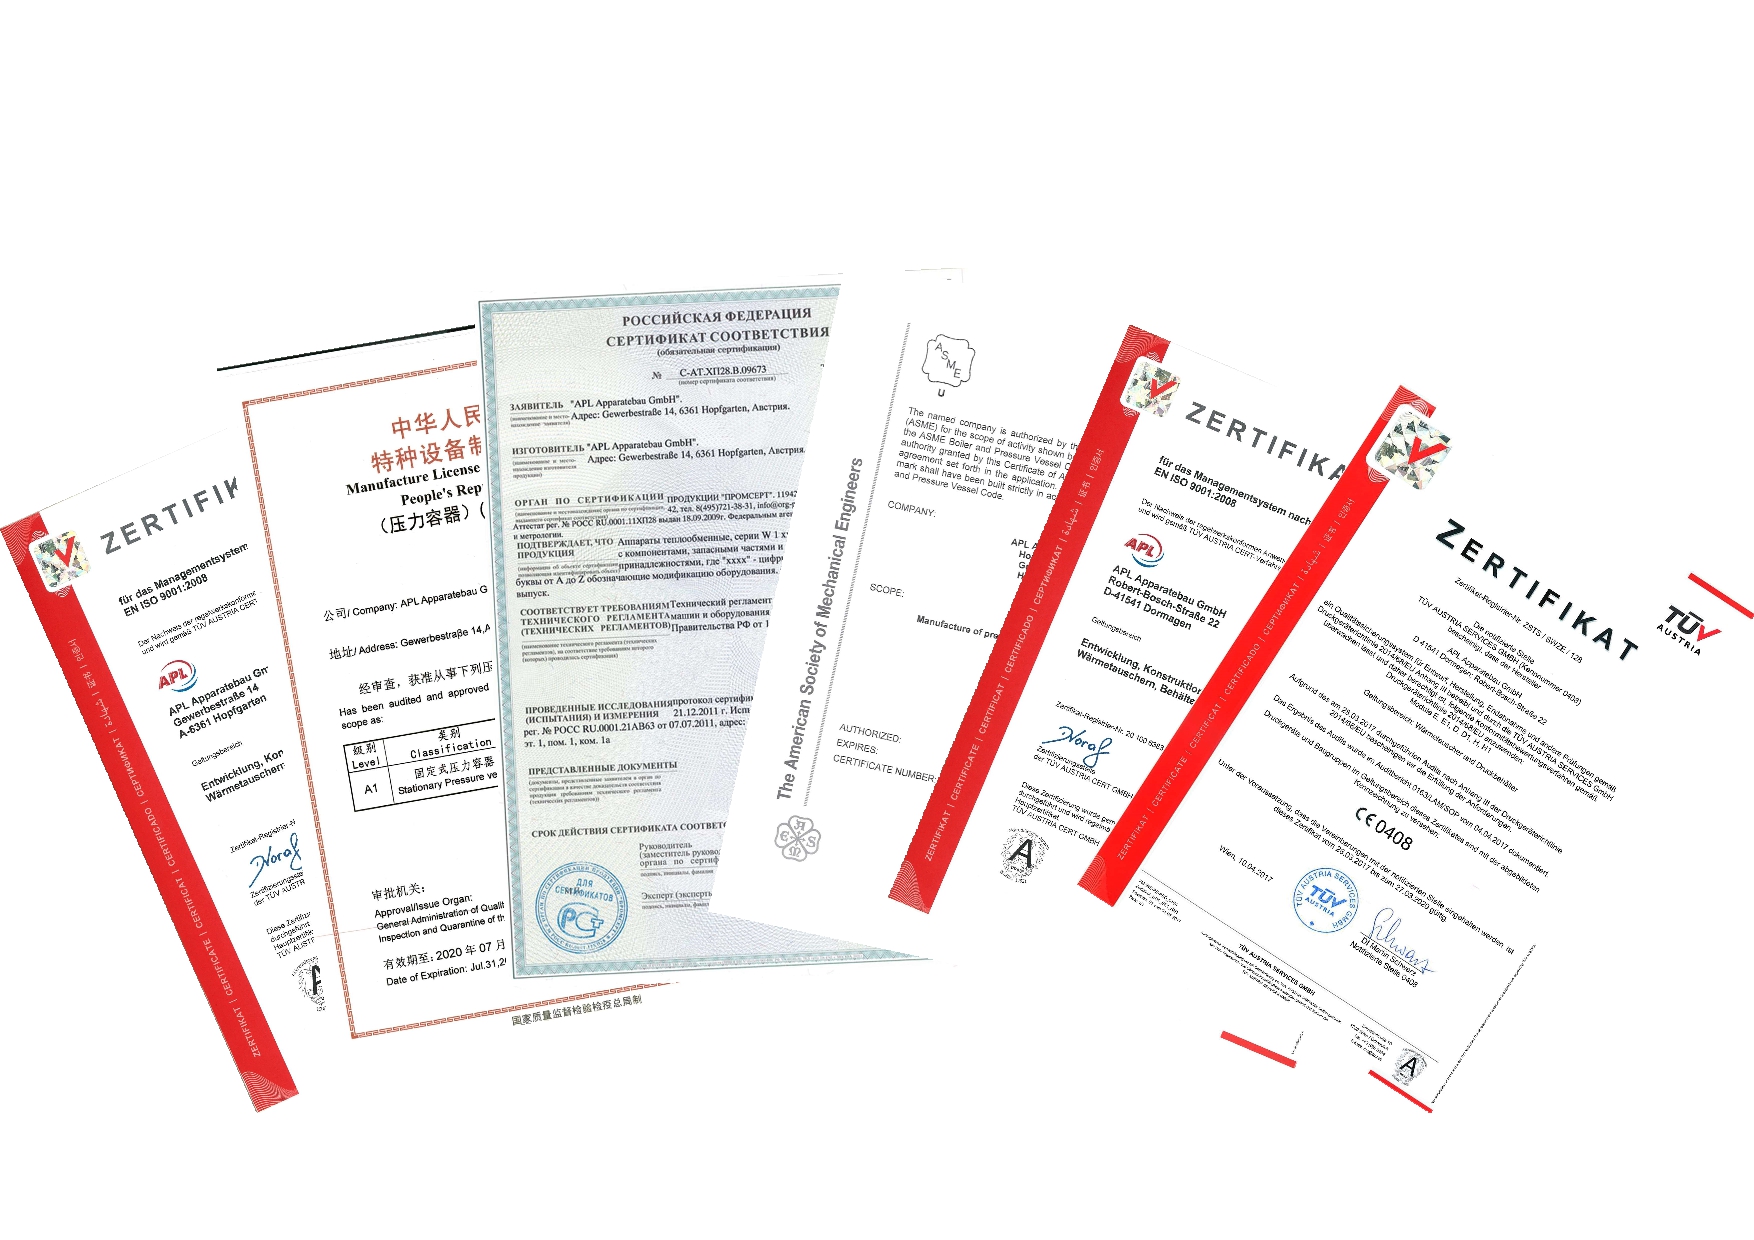 Zertifikate der Innex Wärmetauscher GmbH